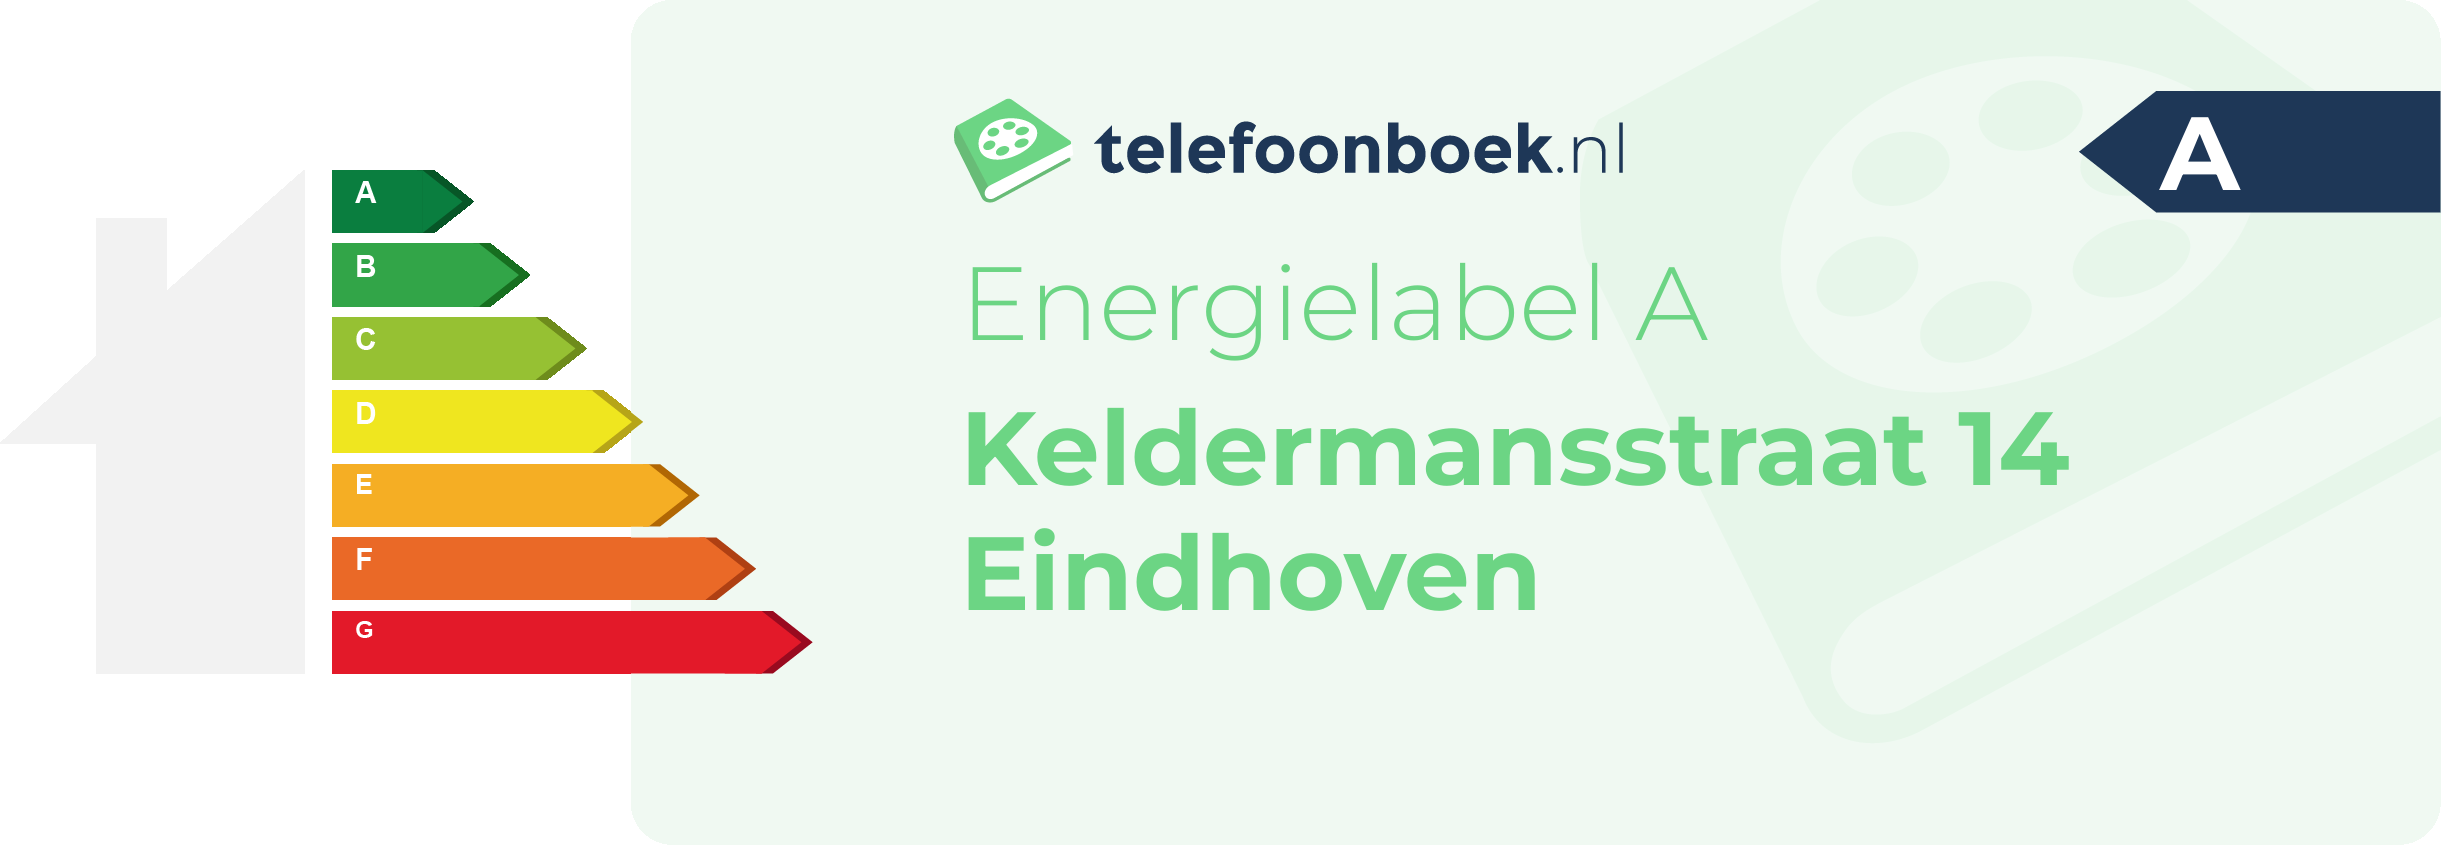 Energielabel Keldermansstraat 14 Eindhoven